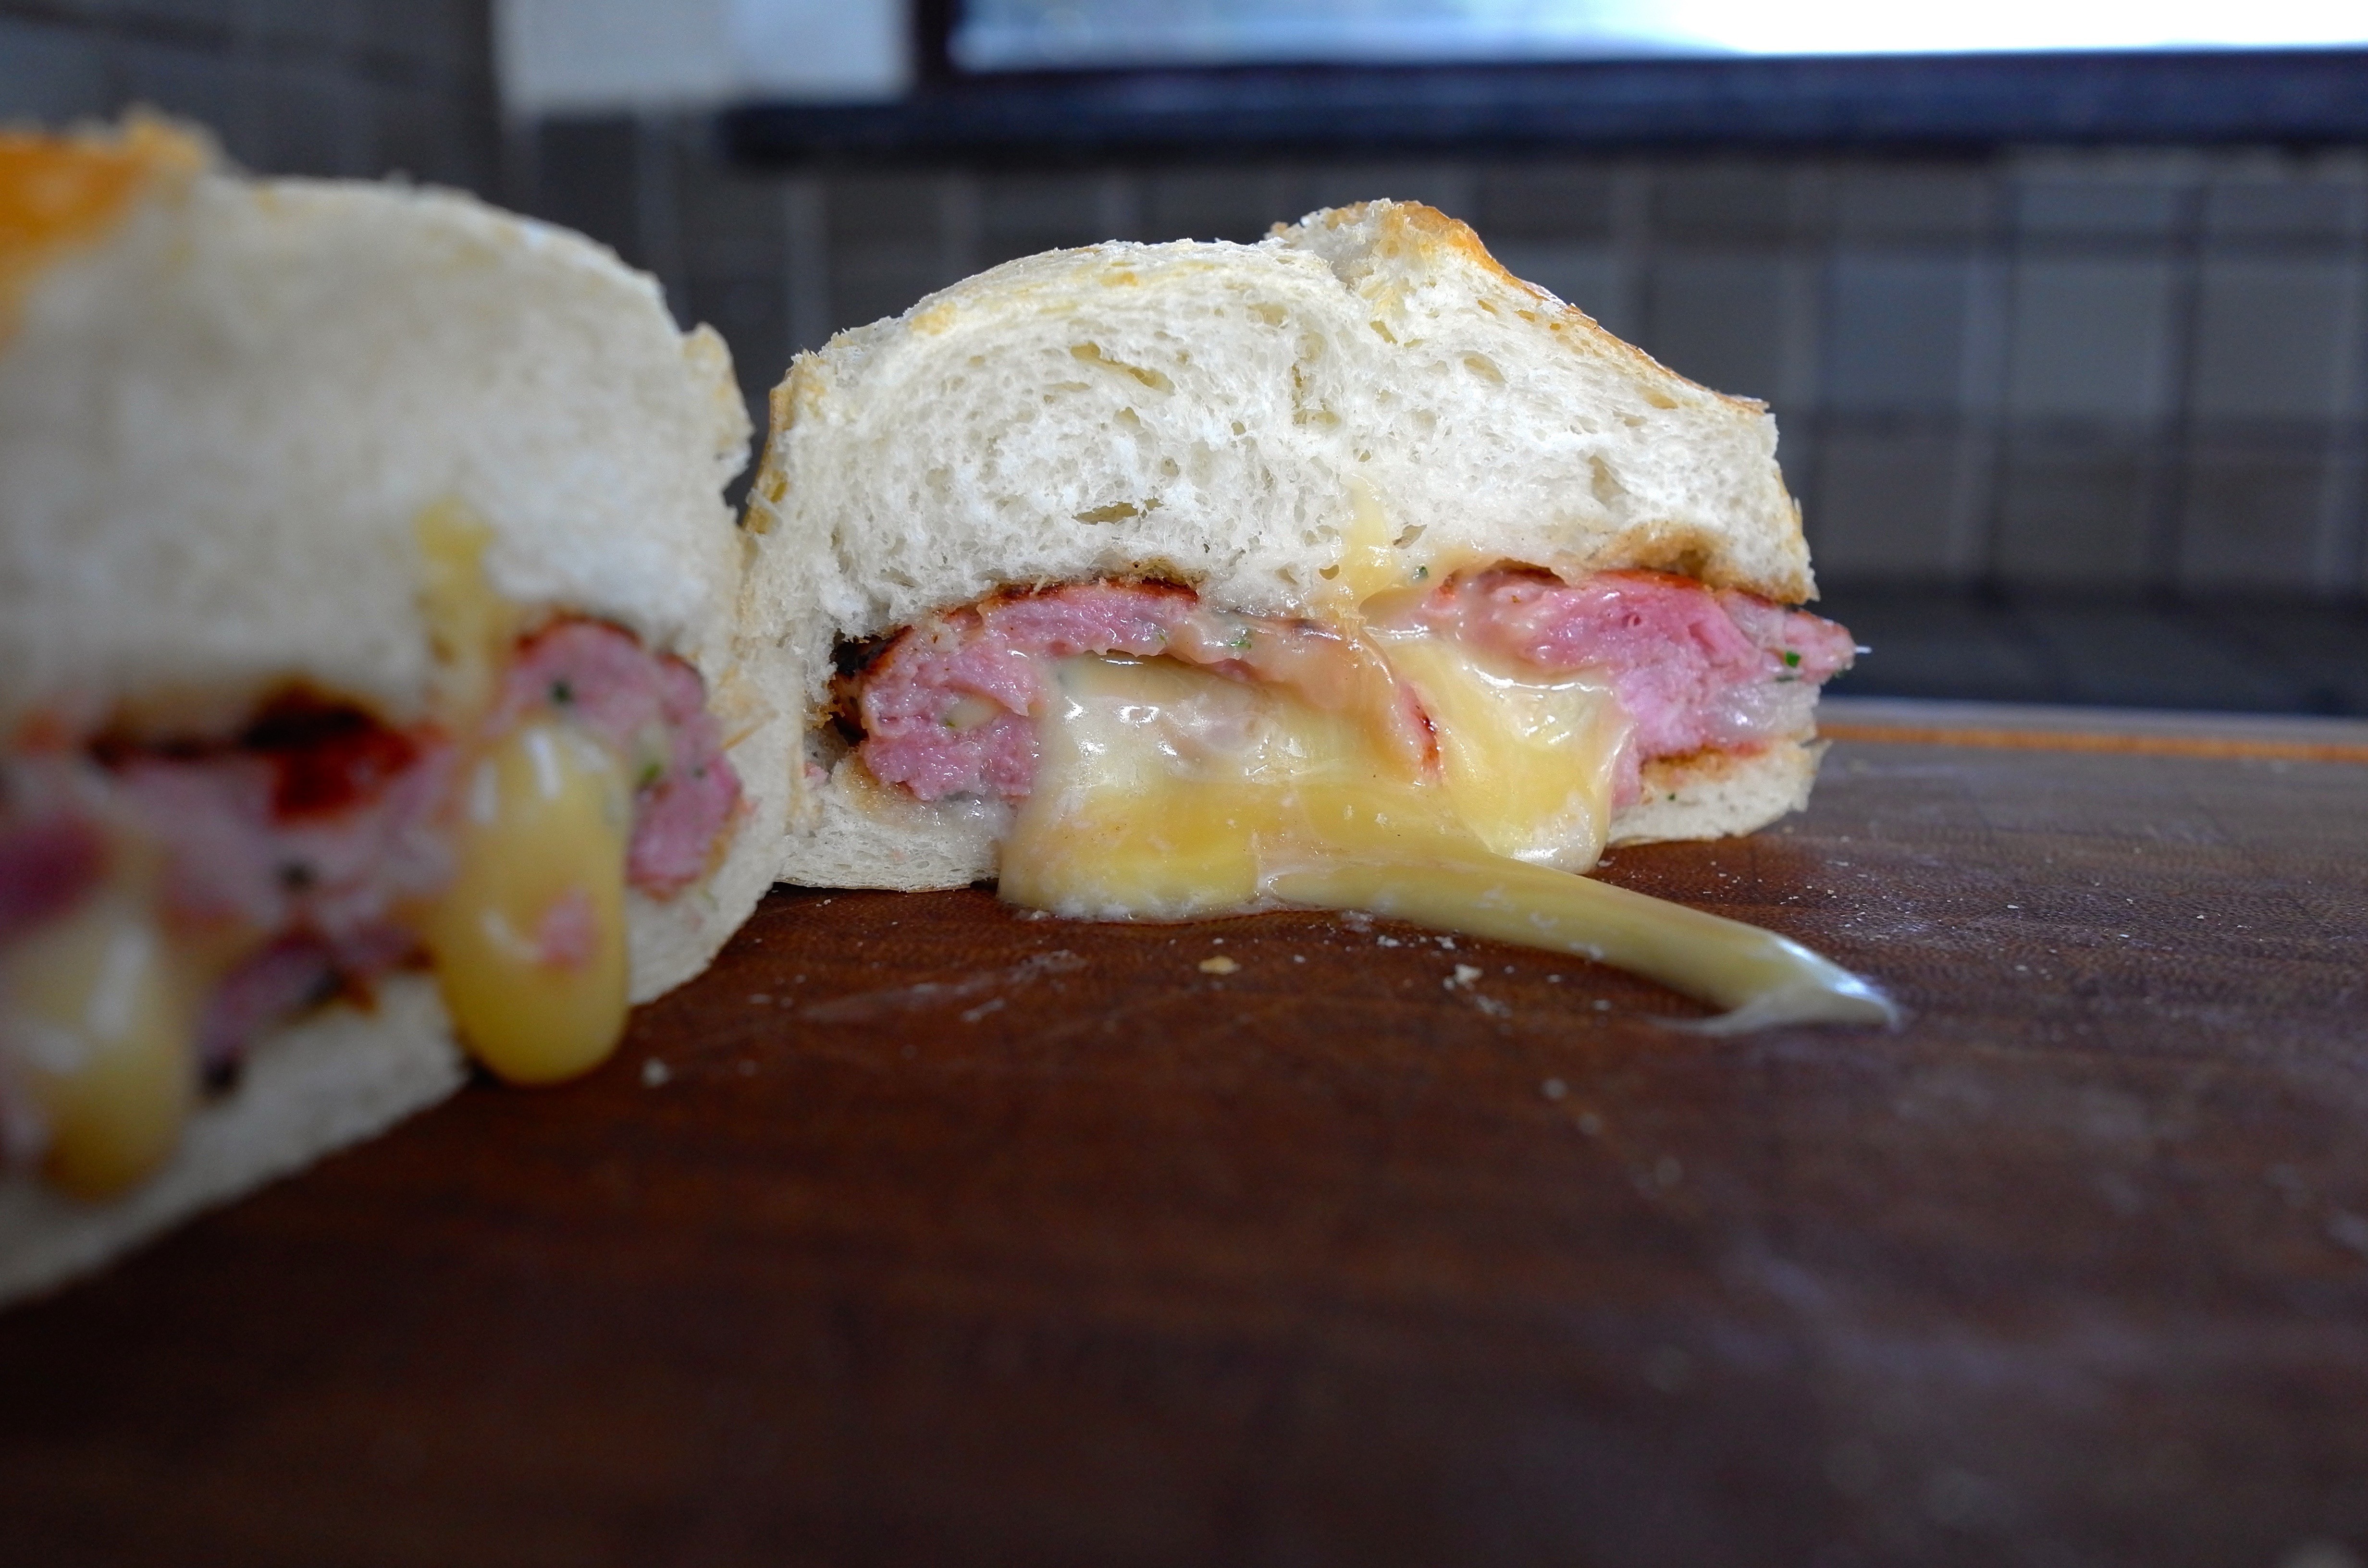 O sanduíche de linguiça perfeito não precisa, necessariamente, ser feito na churrasqueira (Foto: André Lima de Luca)